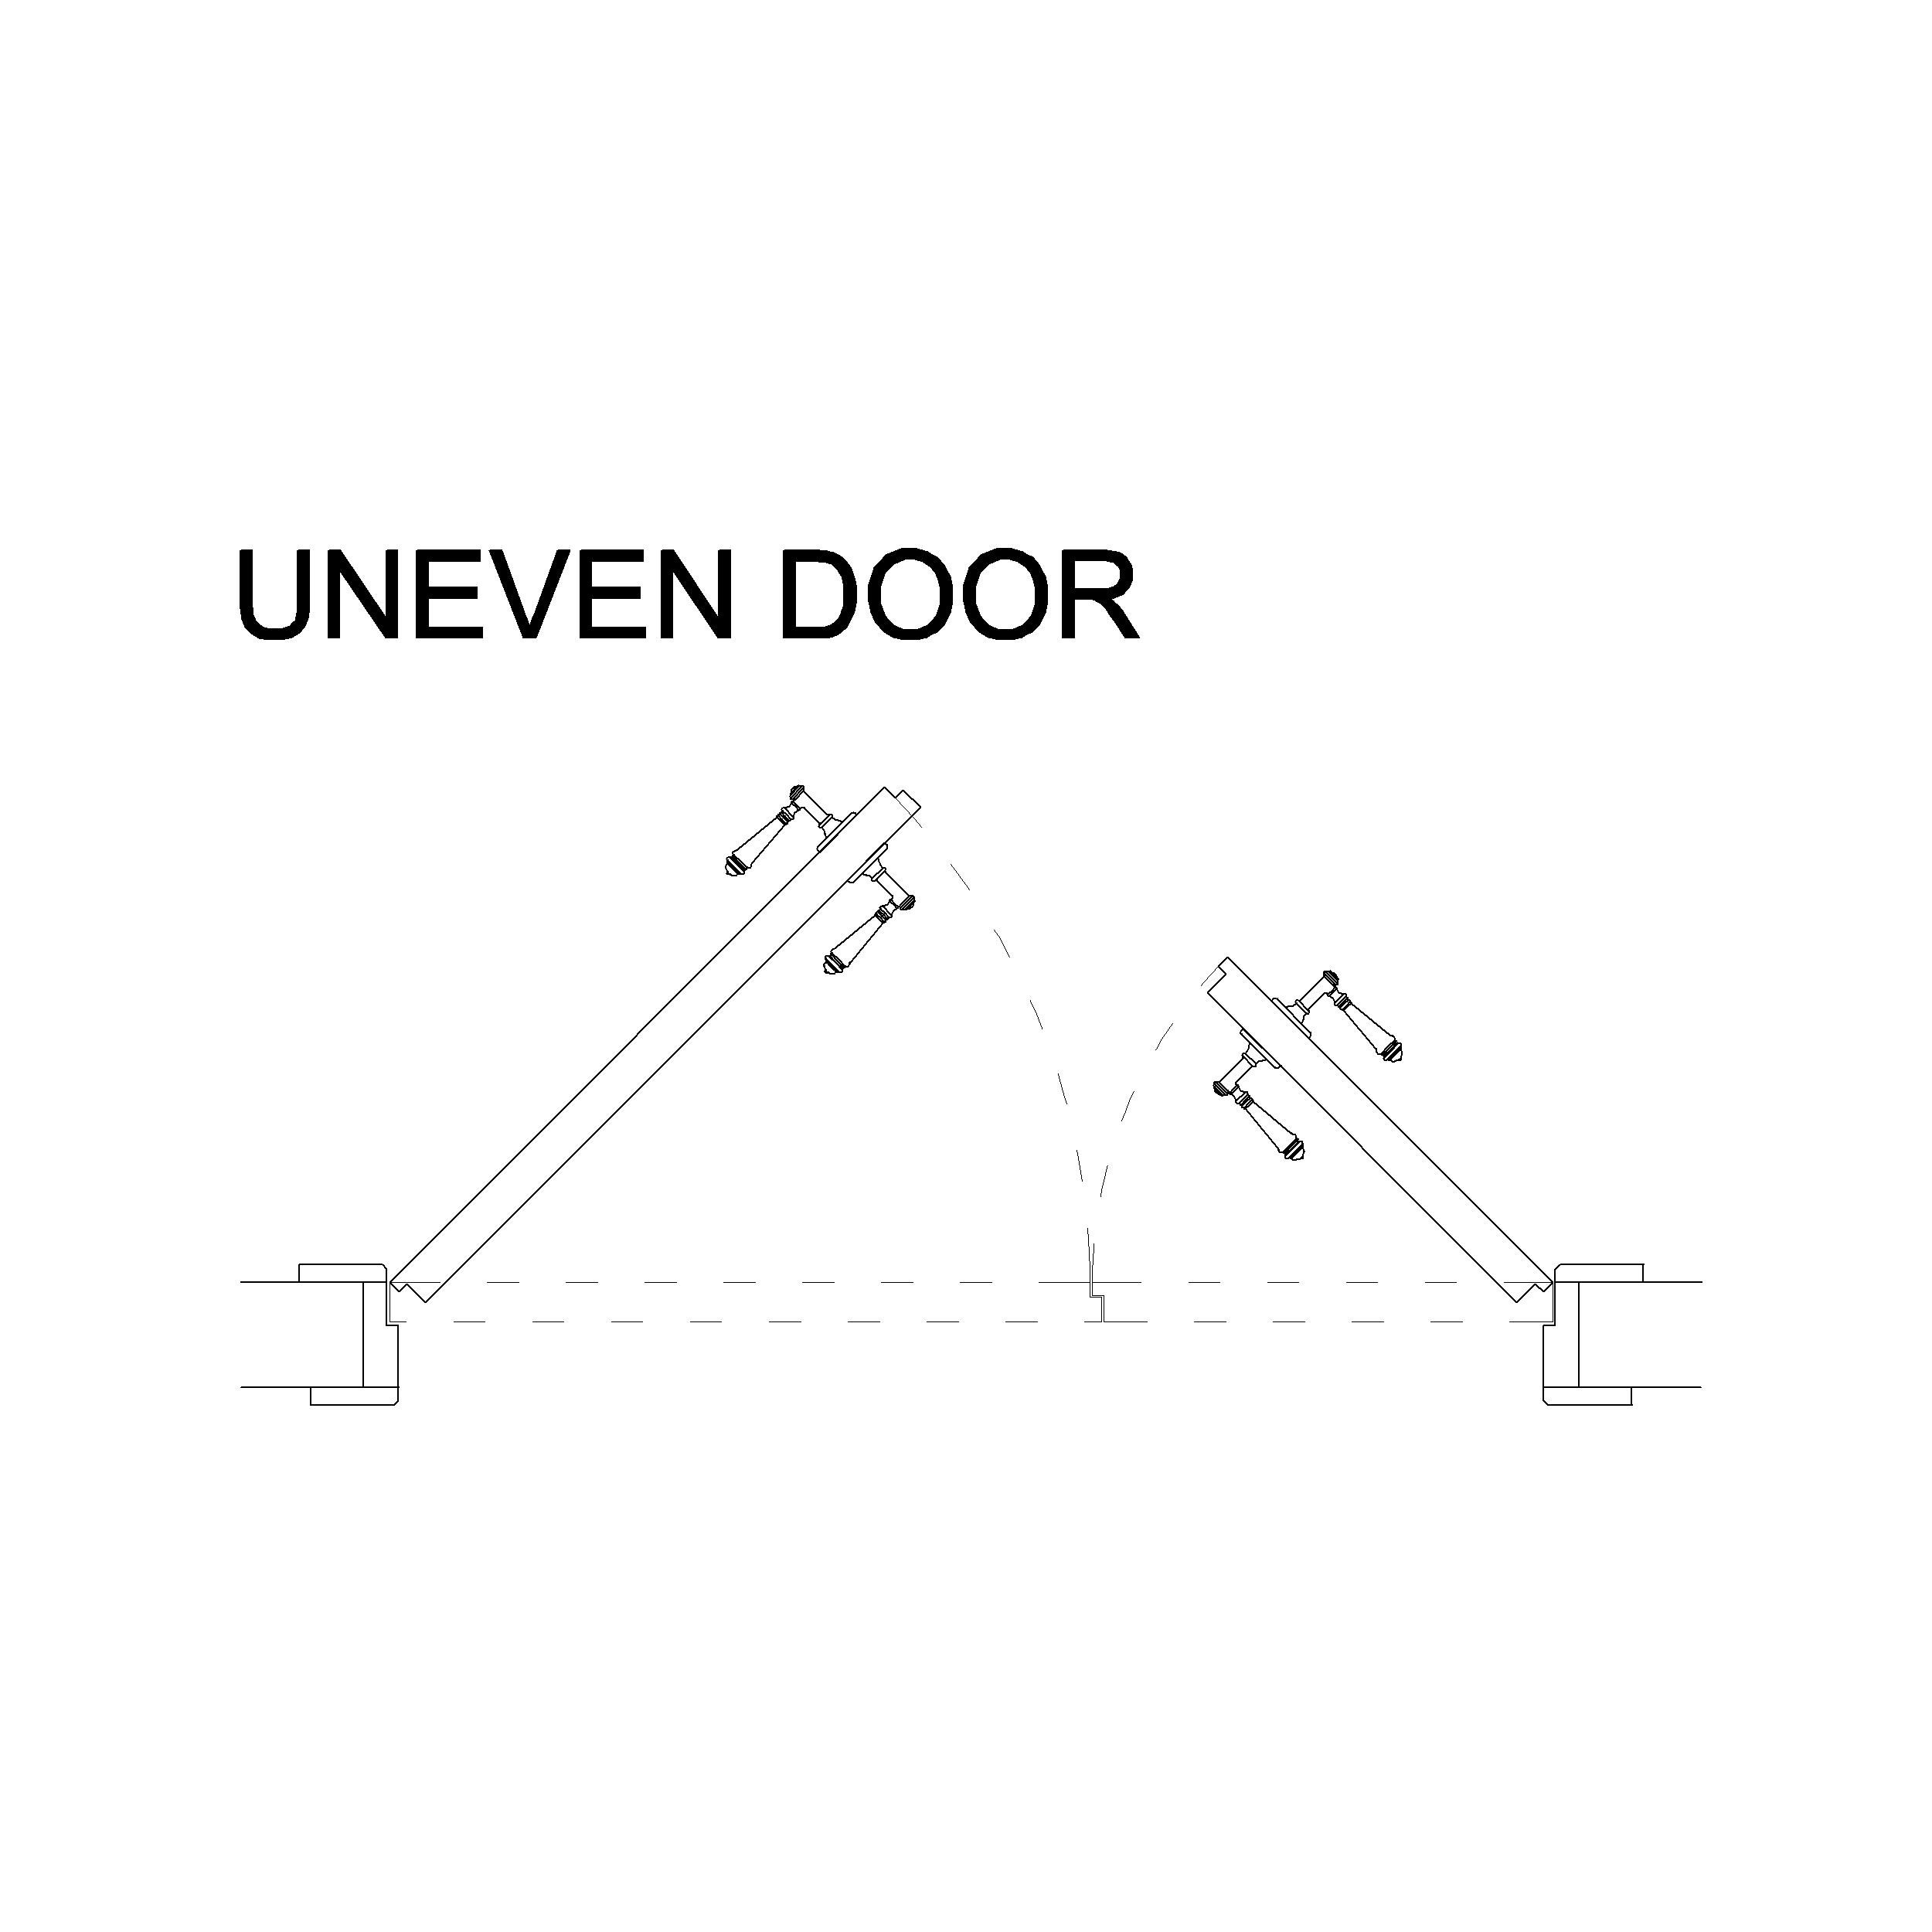 Double uneven Swing Door: 2D Top View Plan - Cadblockdwg